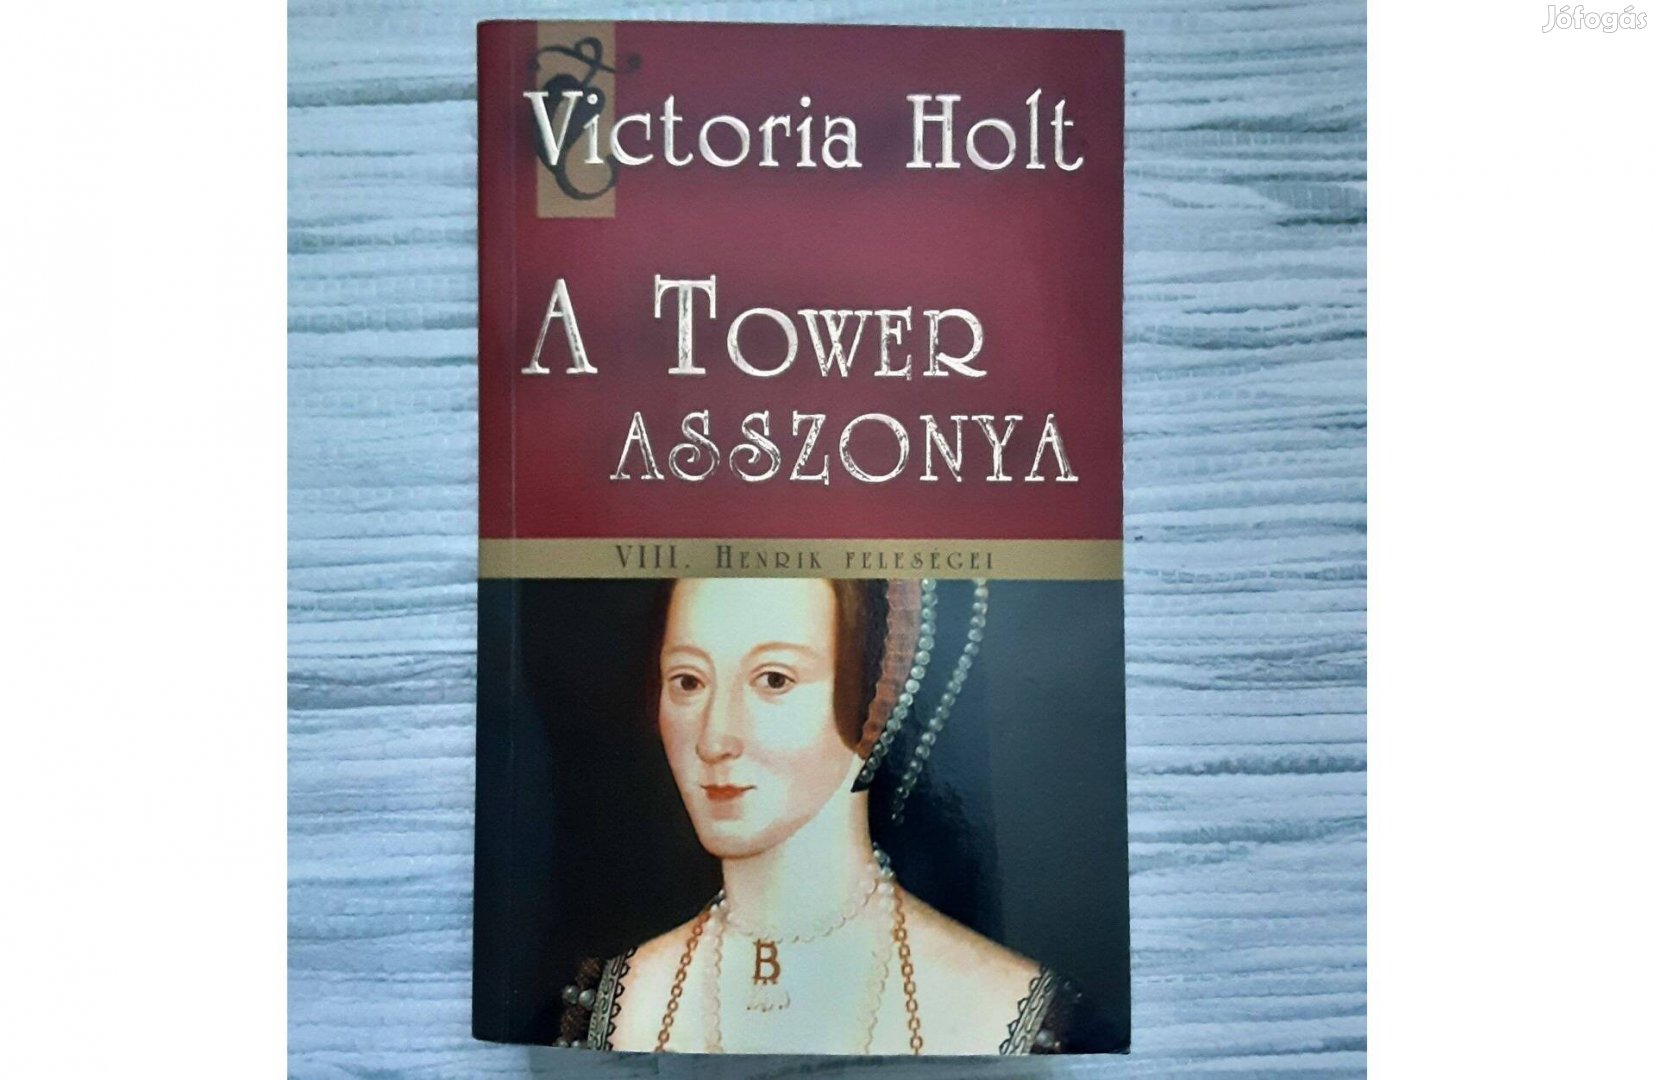 Victoria Holt: A Tower asszonya - VIII. Henrik feleségei